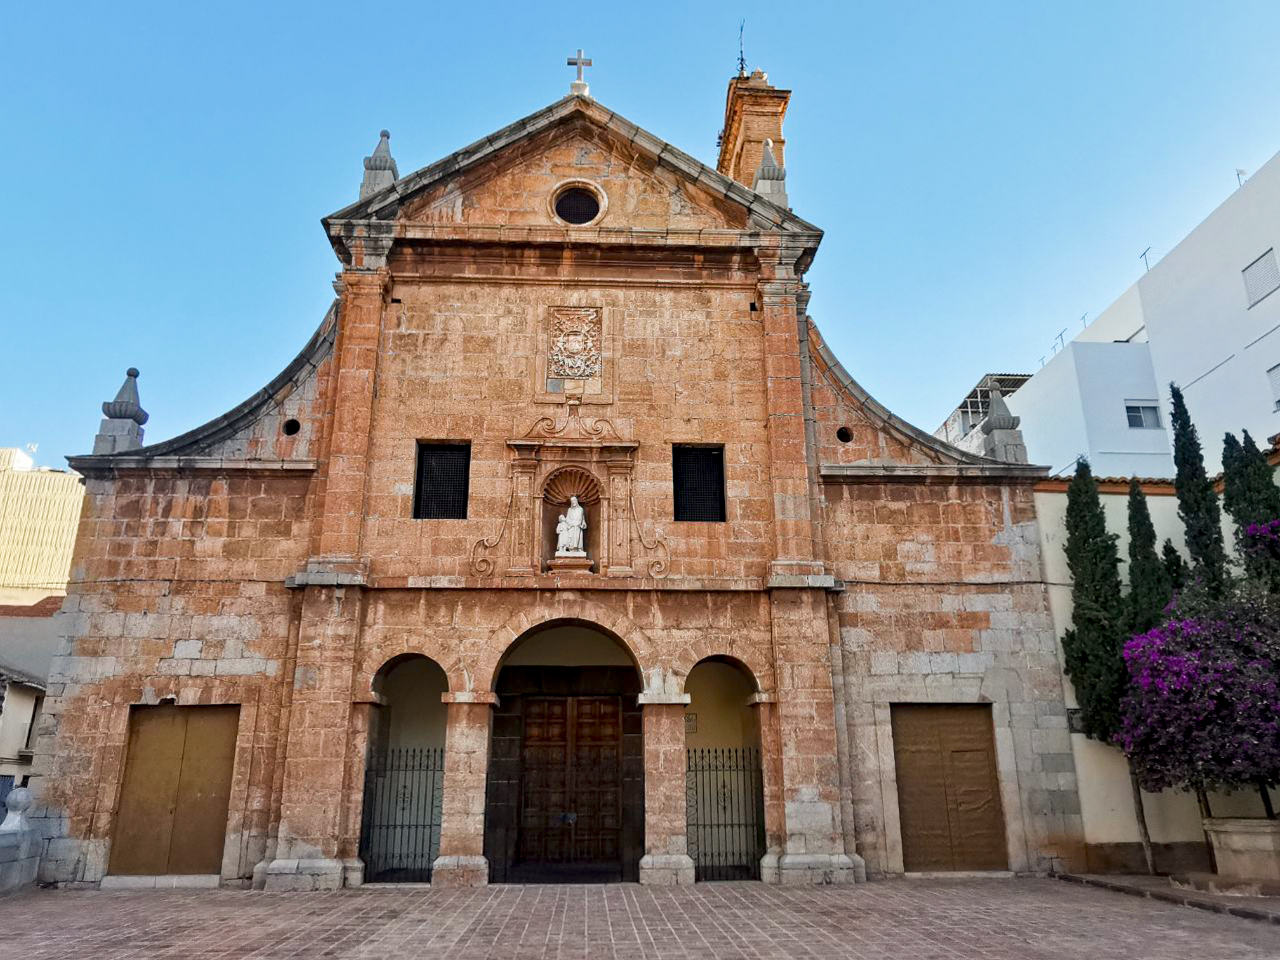 Nules recupera la cantata que inauguró el convento en el año 1717